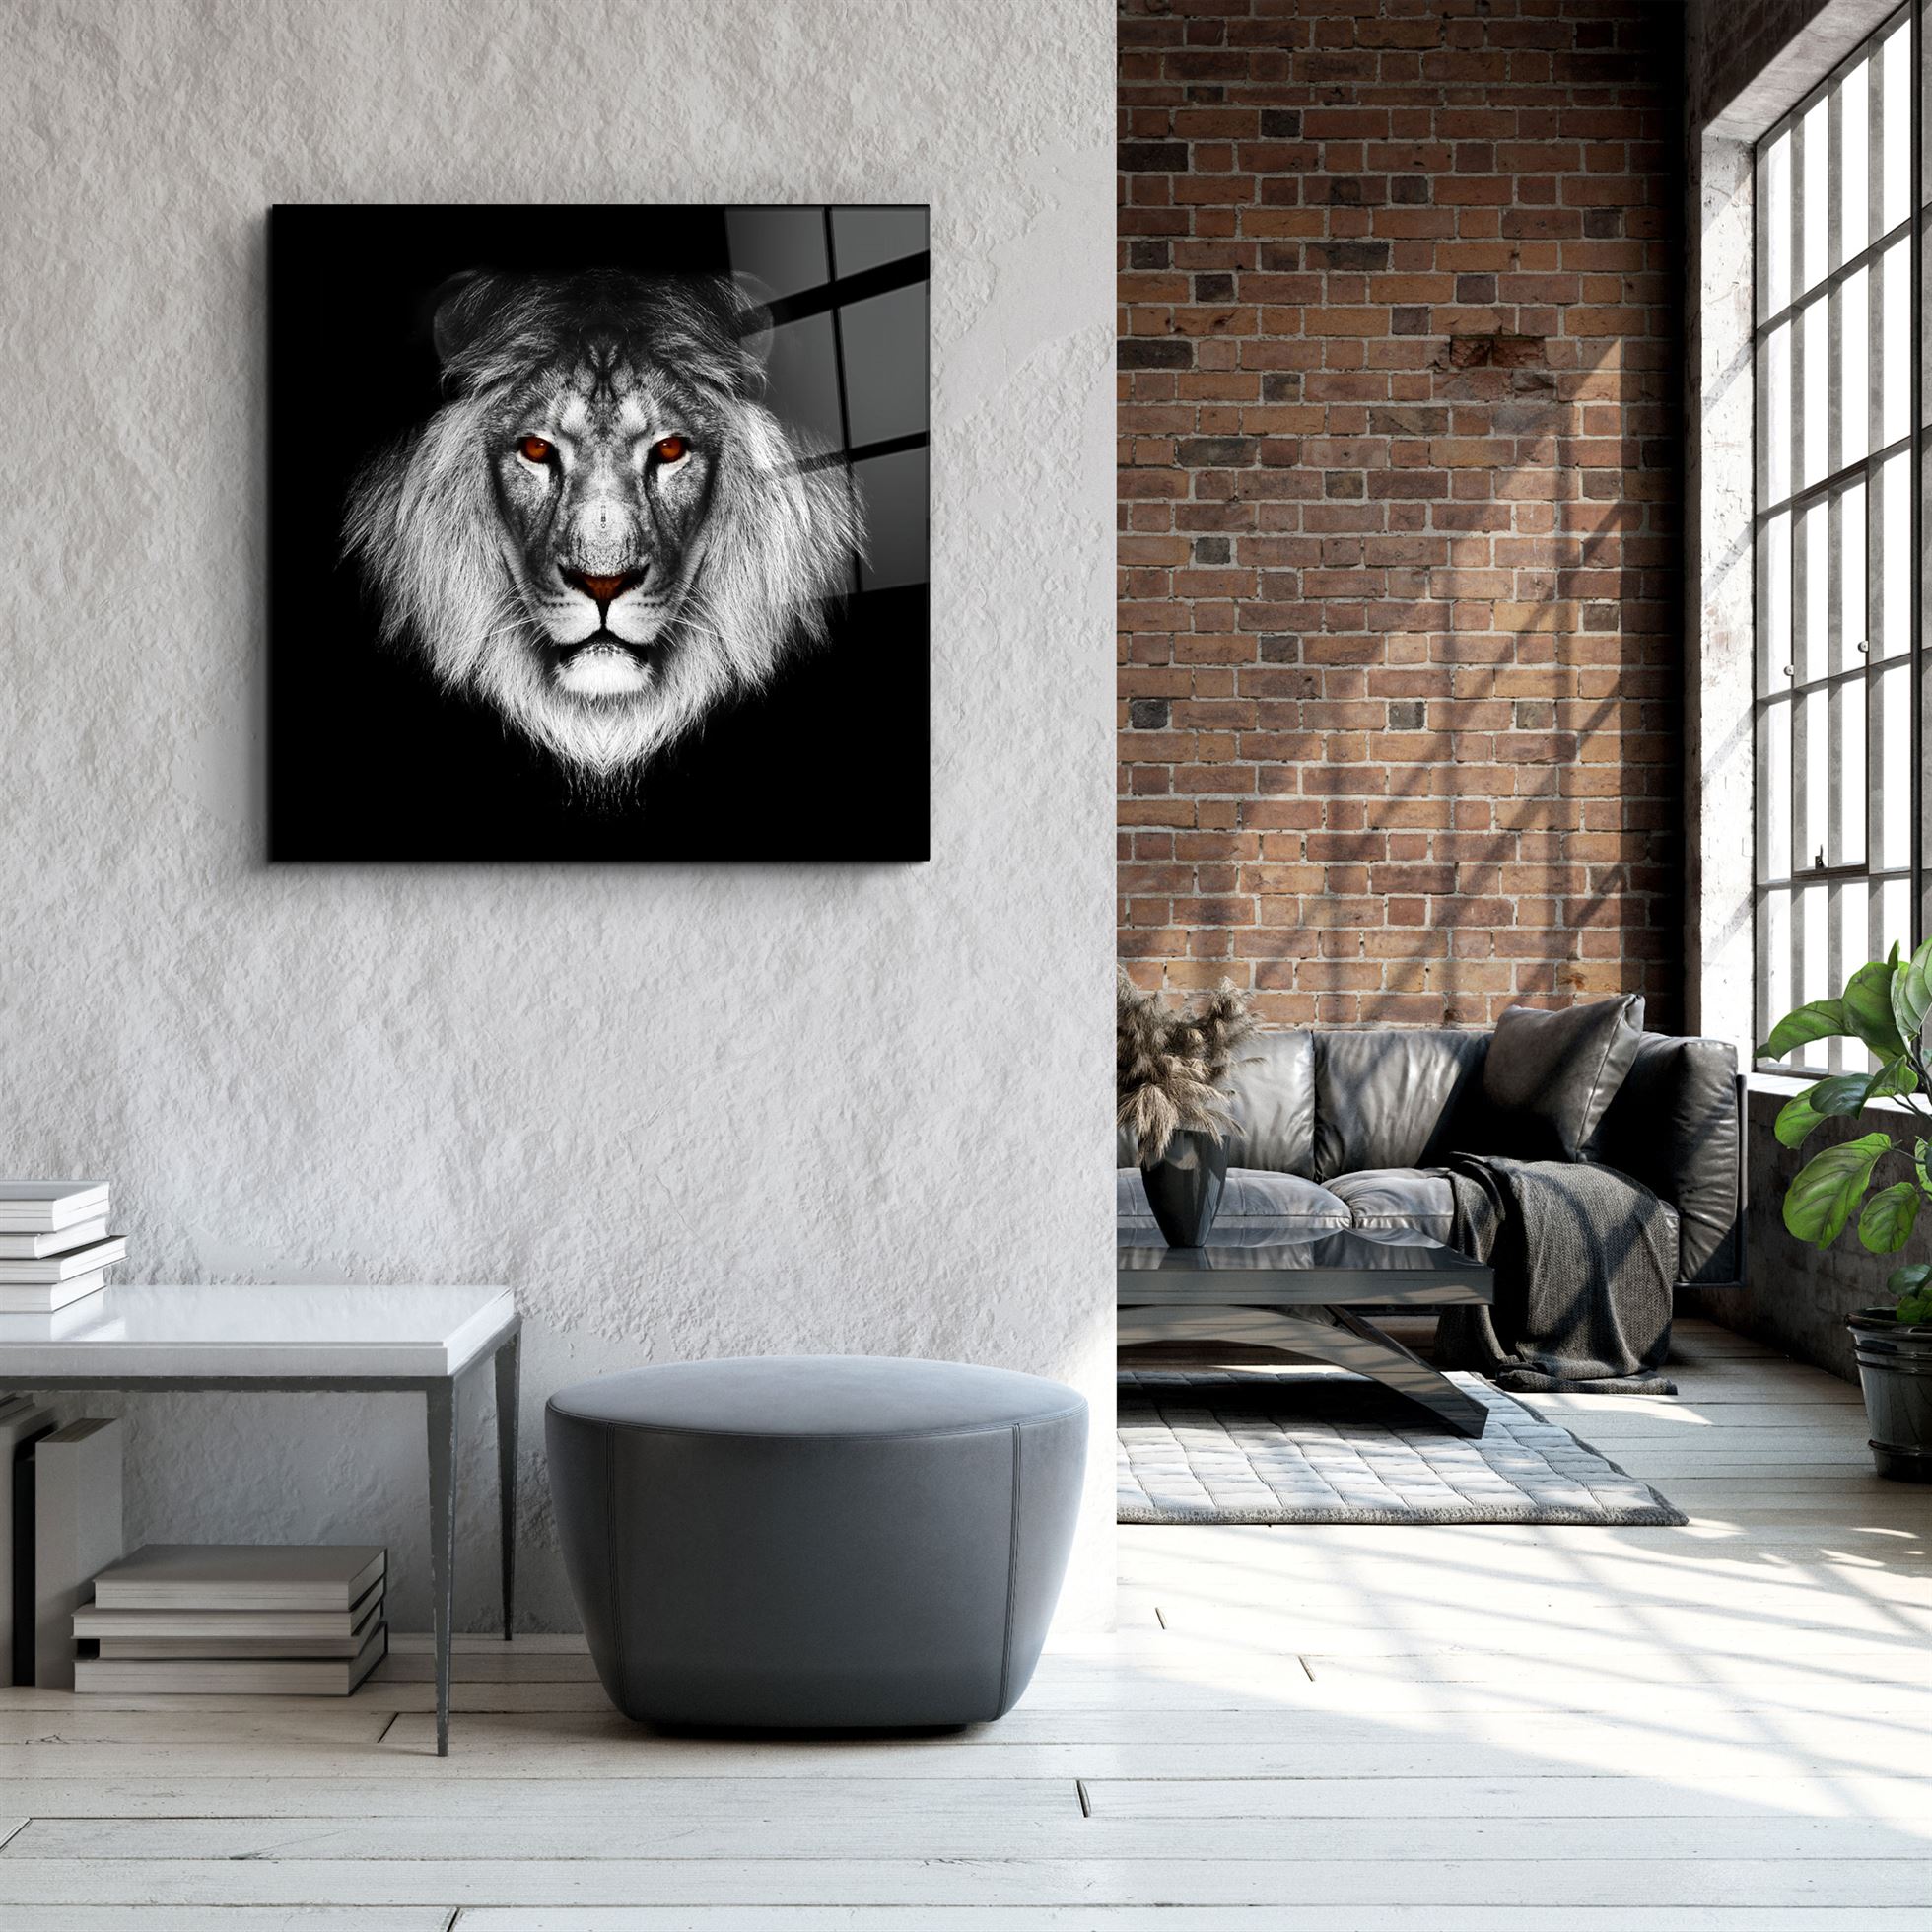 ・"Lion"・Glass Wall Art